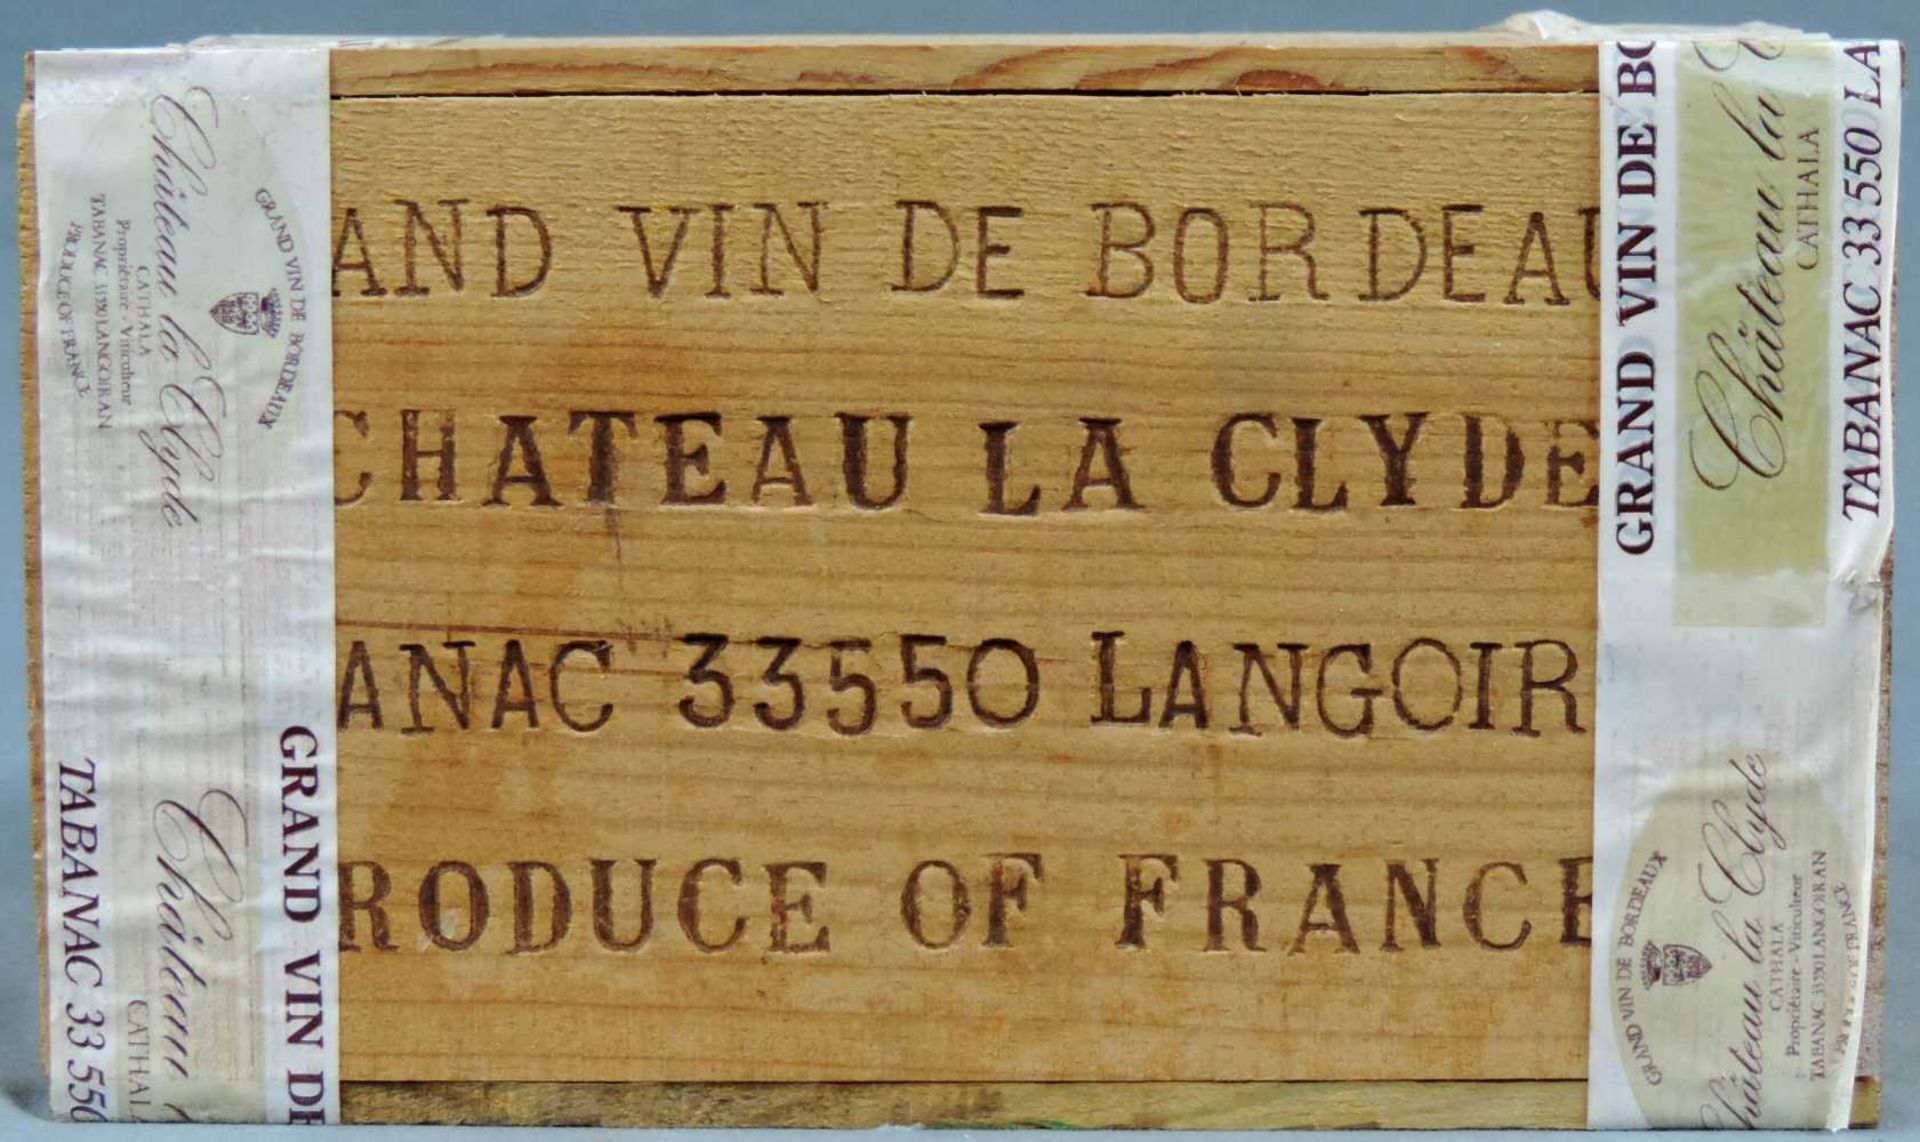 1985 Château Lagrave, und 1983 Château La Clyde. Bordeax. Insgesamt 12 Flaschen. Je 6 ganze - Image 5 of 8